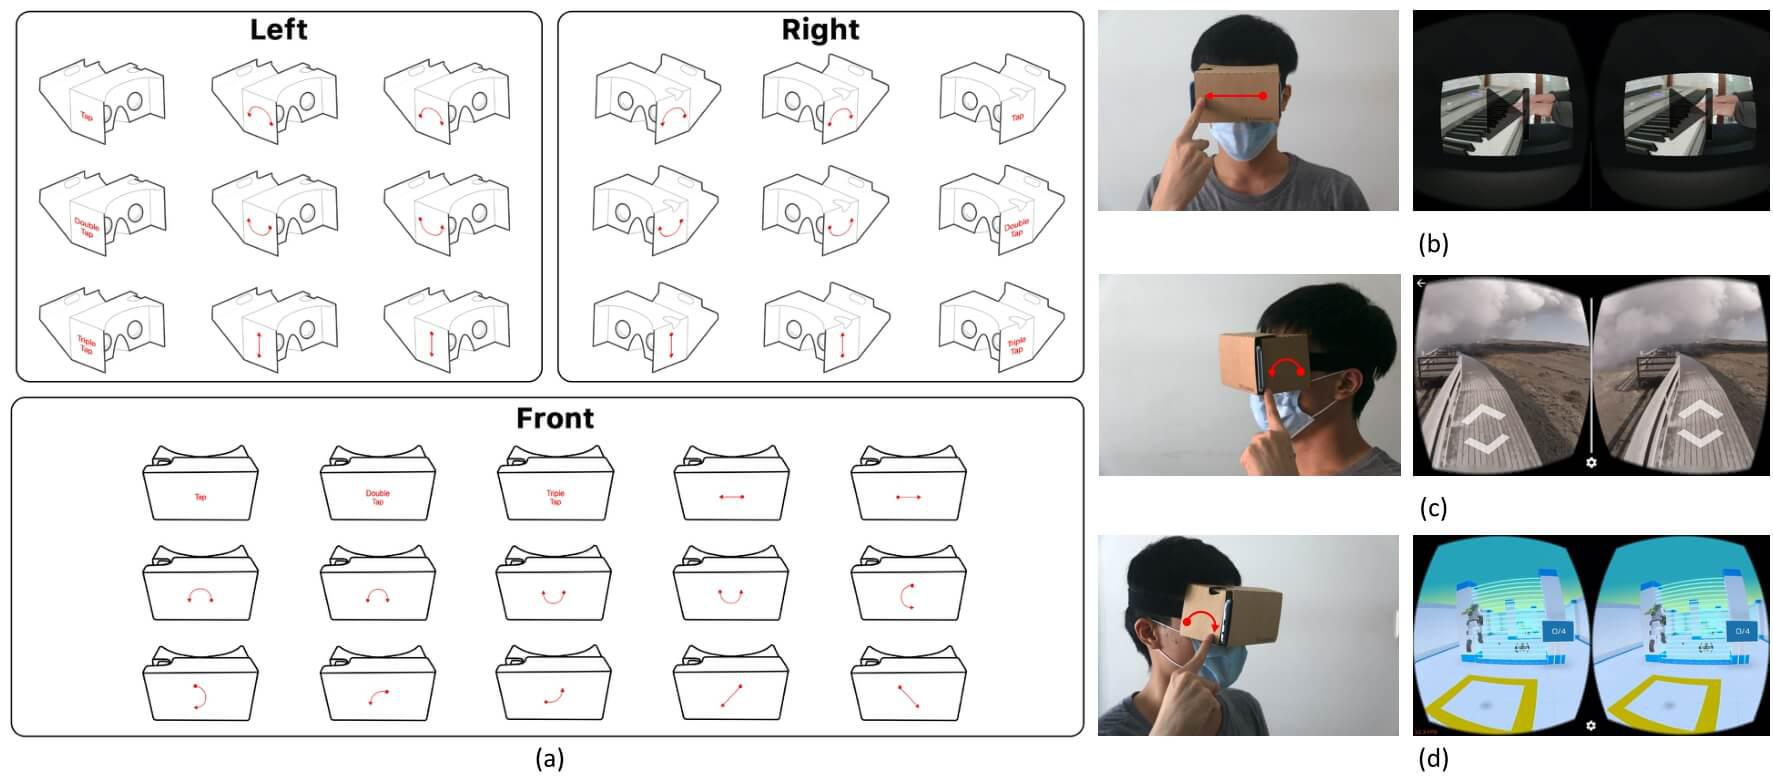 在低成本 VR 头戴式显示器表面实现基于手势互动的方法